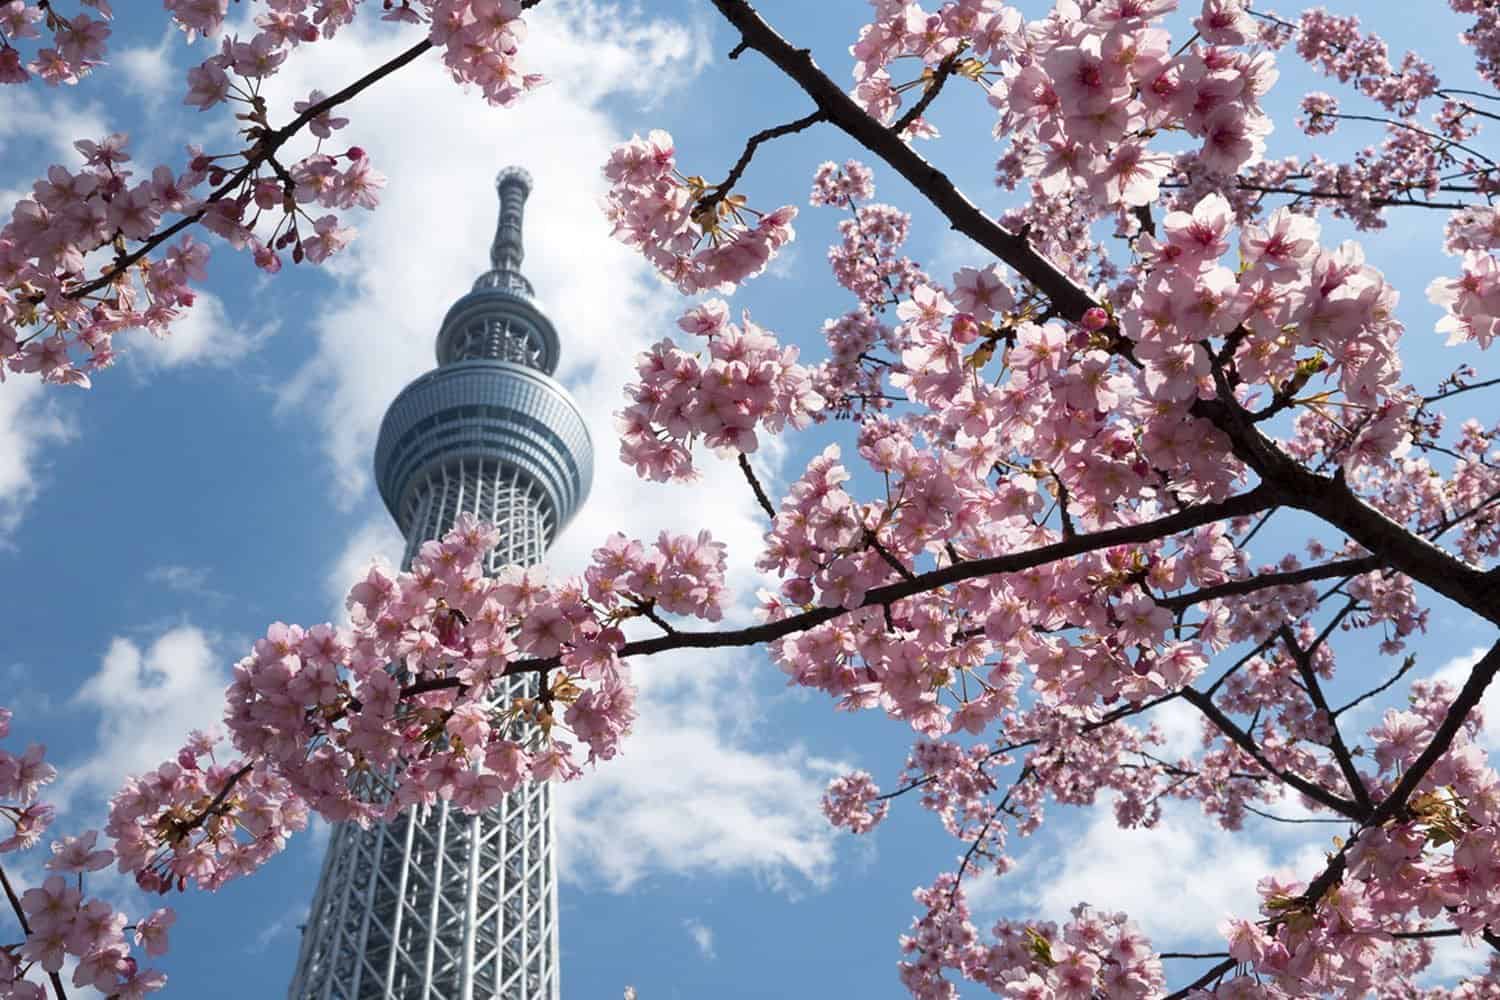 Skytree and cherry blossom